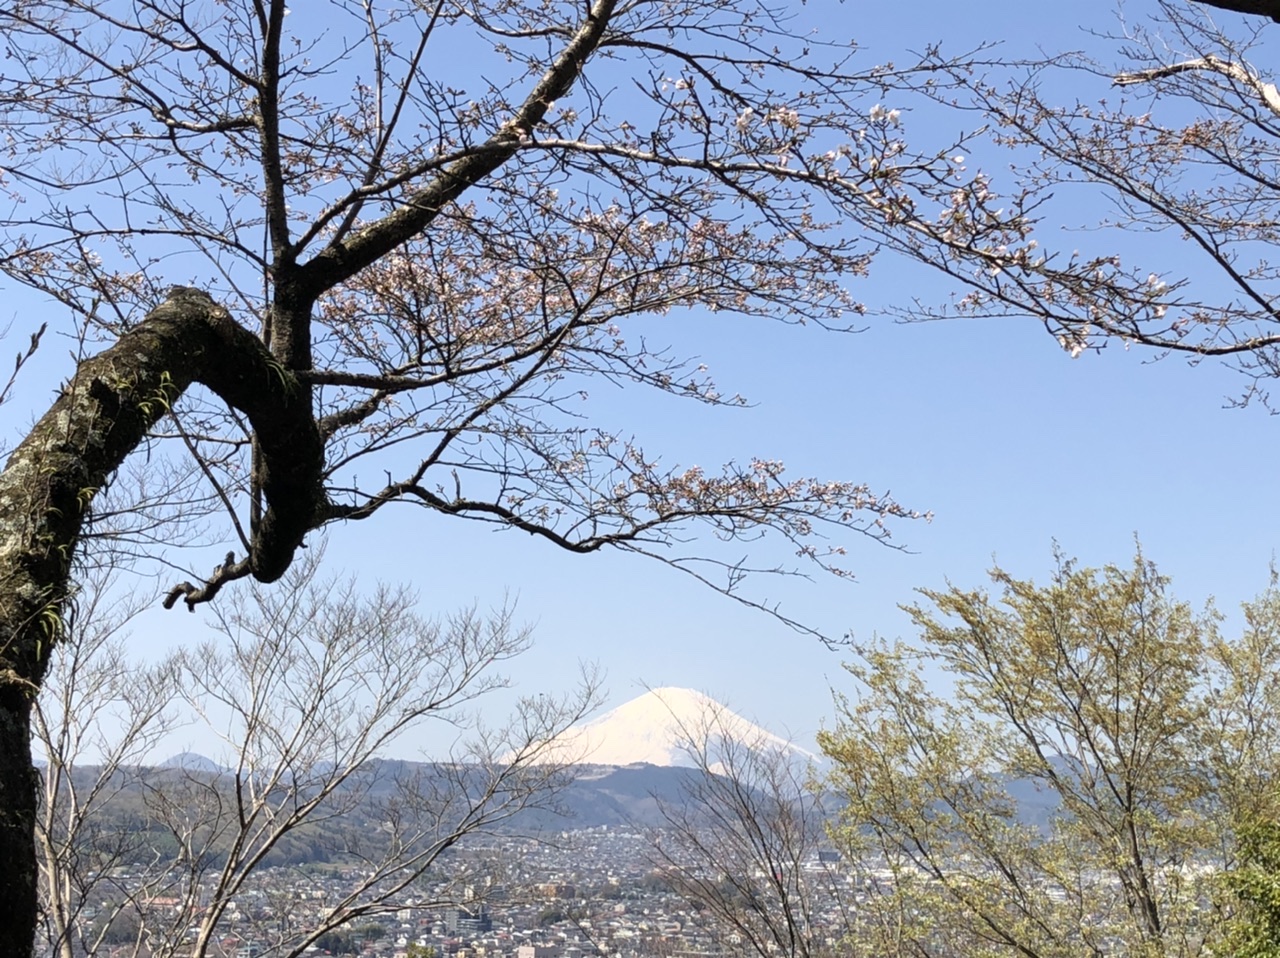 10:45
浅間山からの富士山
桜、満開まで
あと少しだったなー